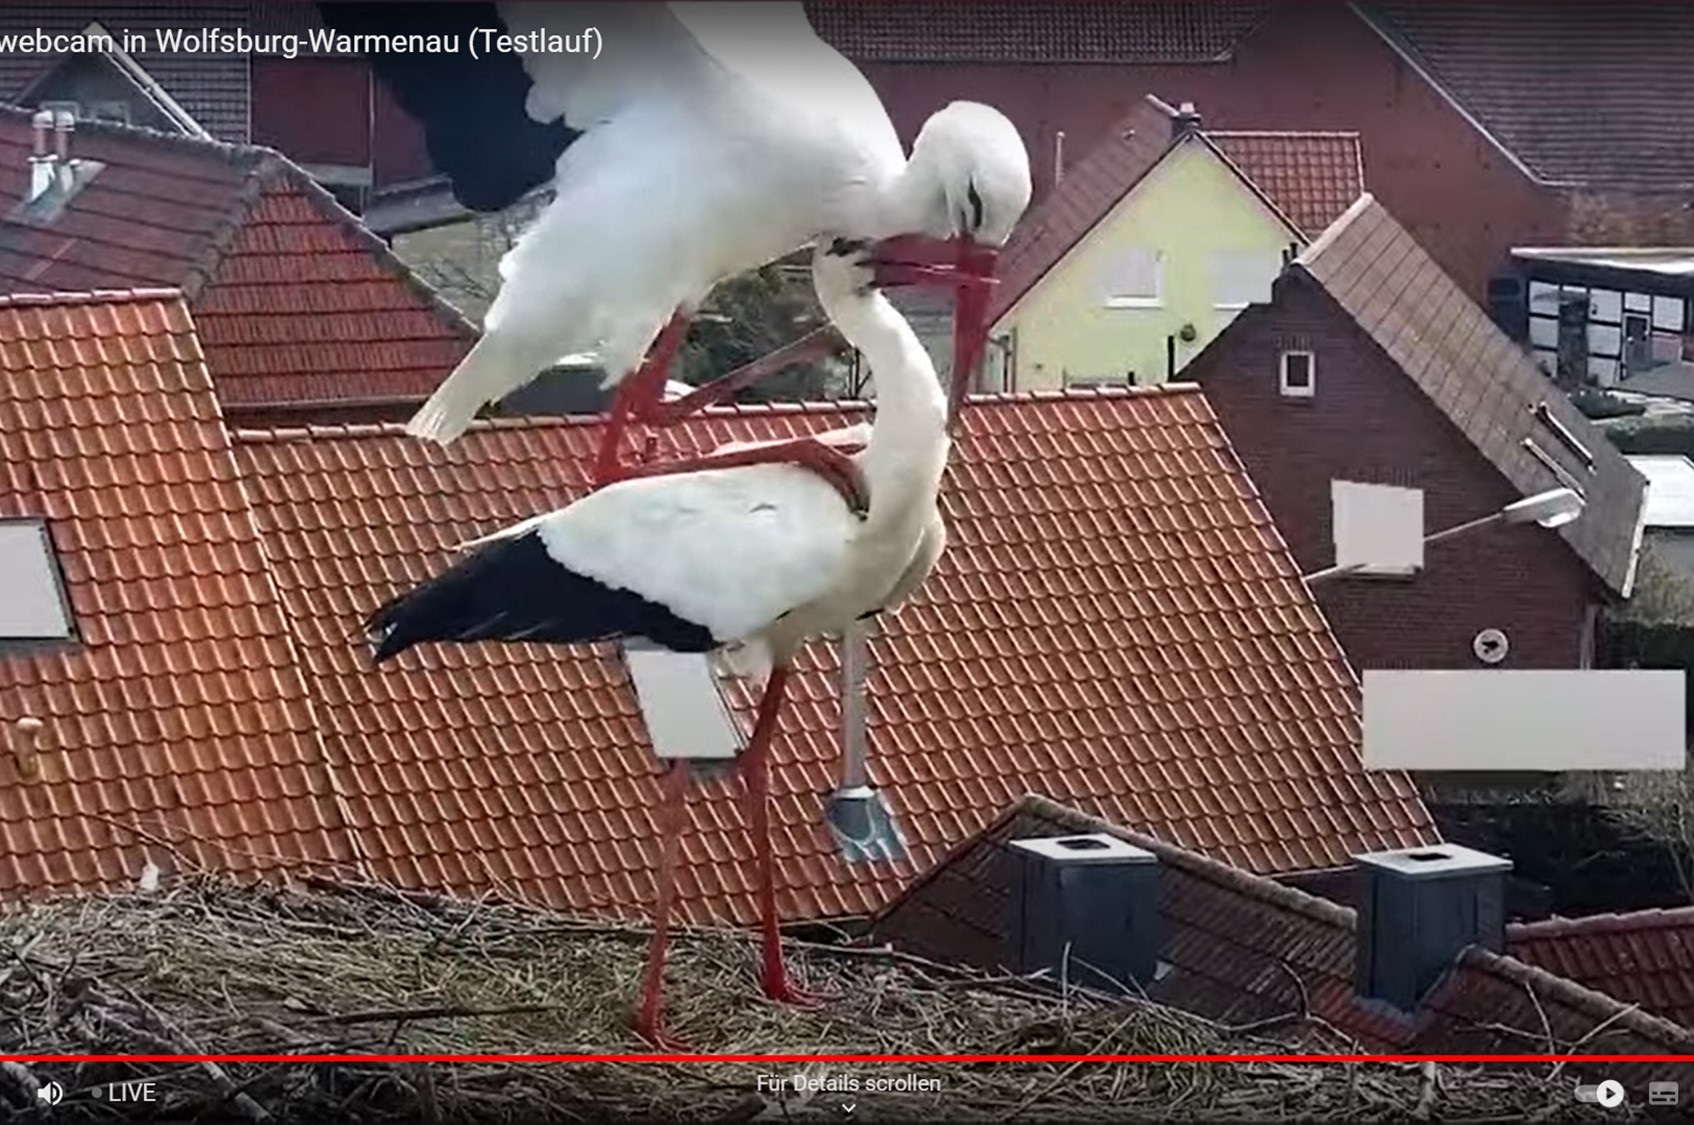 Stork nest in Wolfsburg-Warmenau